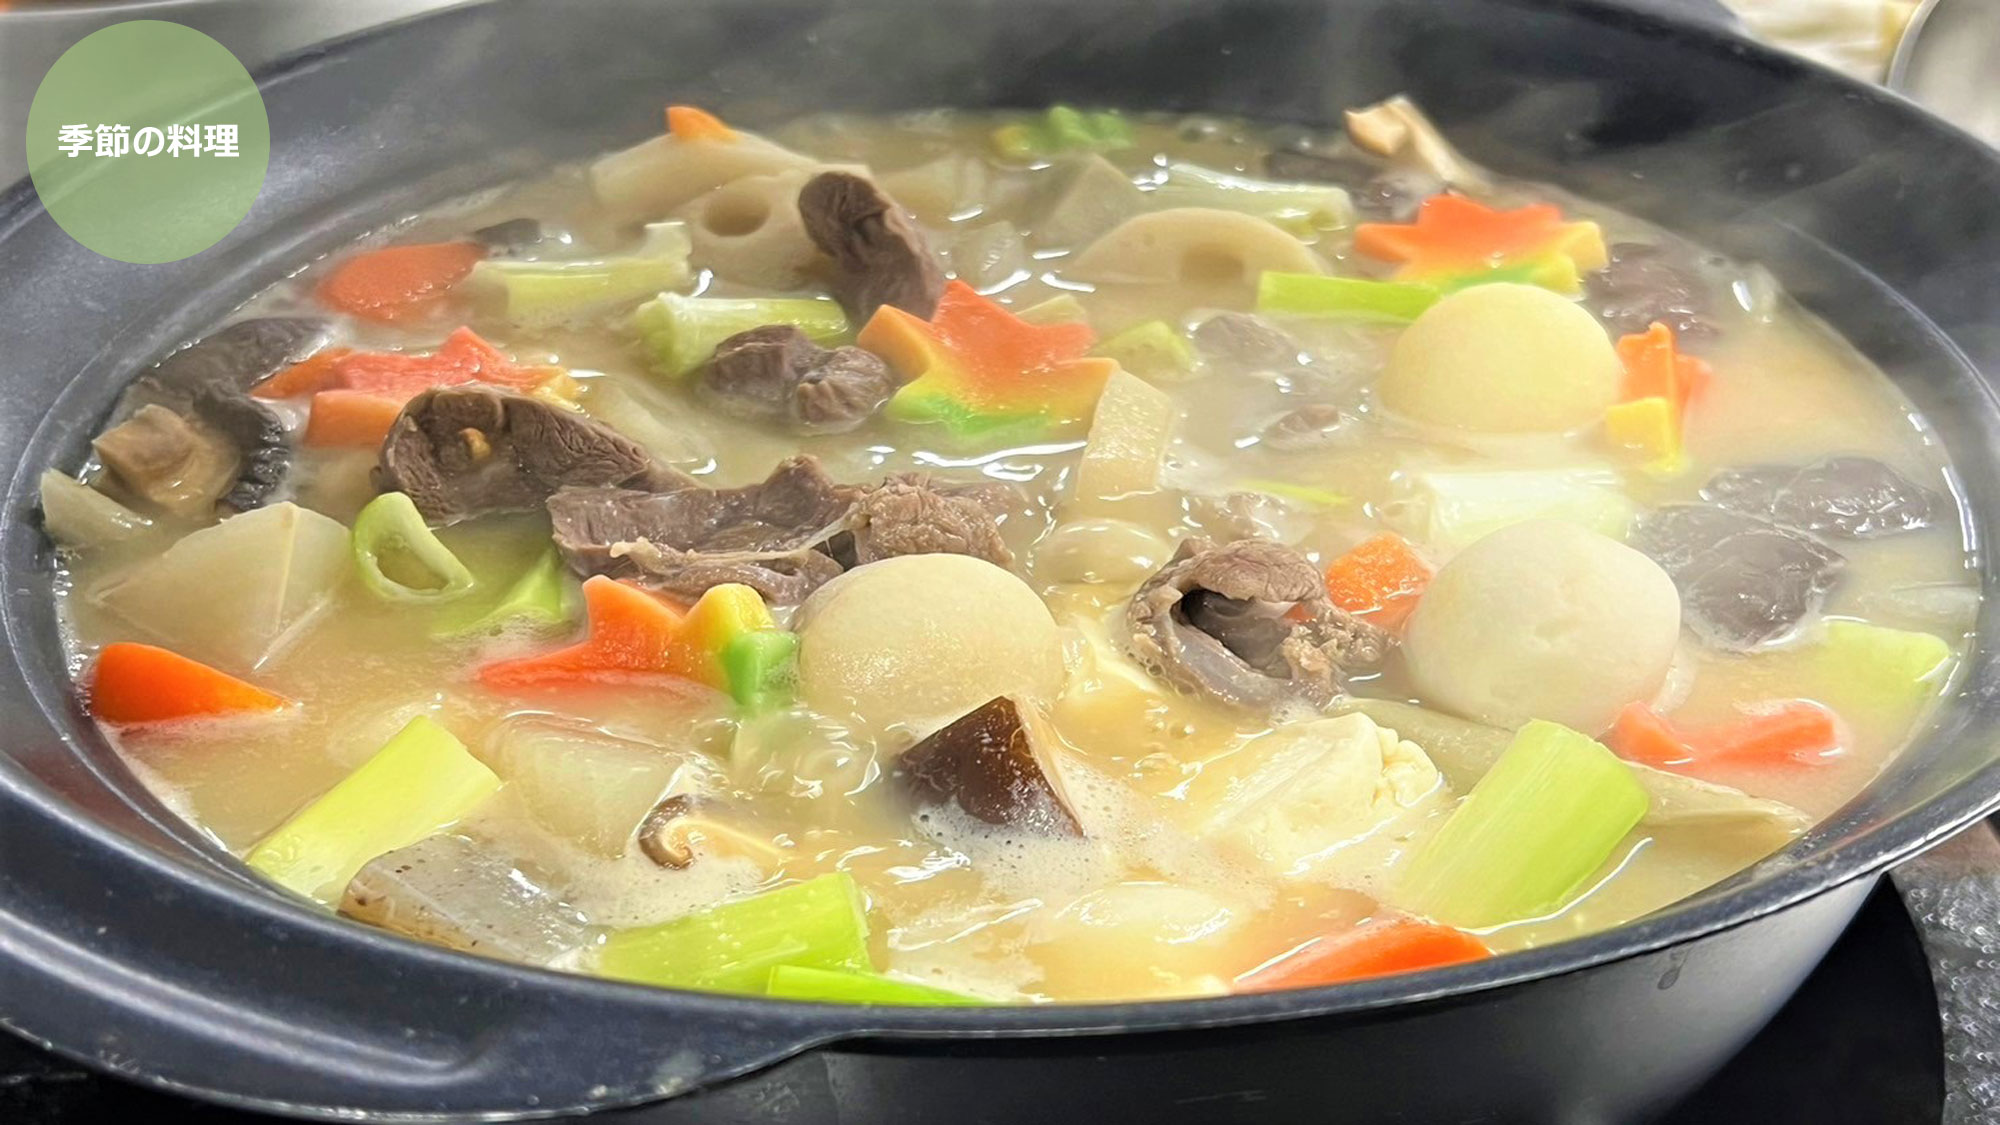 【夕食ビュッフェ一例】鹿肉を使用した「蝦夷マタギ鍋」は寒い季節にぴったりの冬季メニューです。